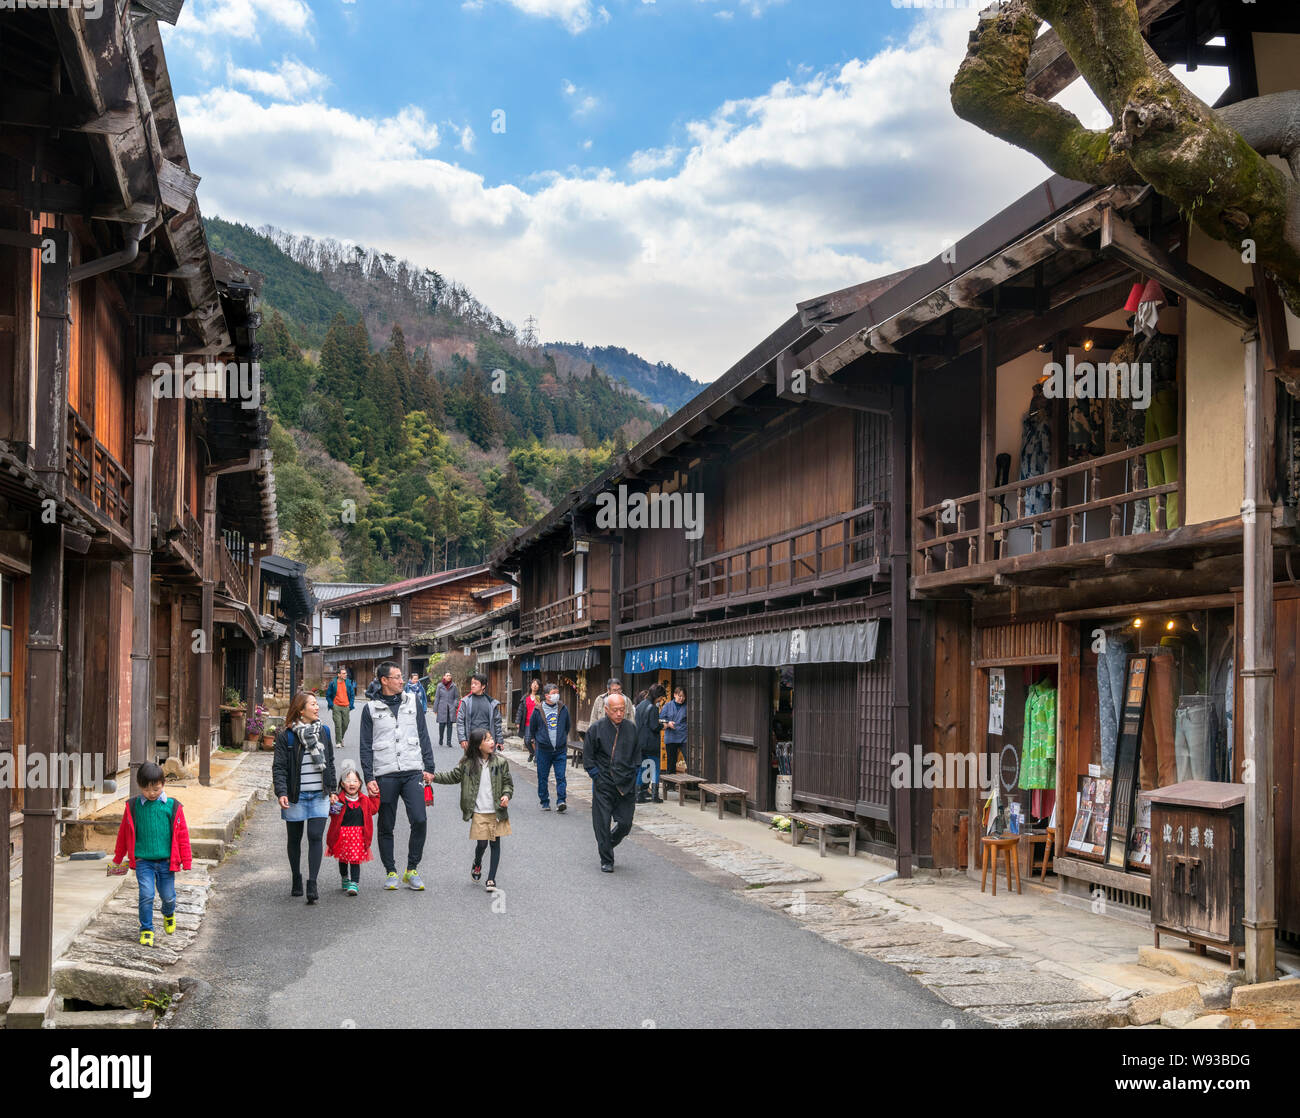 Besucher gehen auf der Main Street in der Alten Post Stadt Tsumago (Tsumago-juku), Nagiso, Kiso Bezirk, Präfektur Nagano, Japan Stockfoto